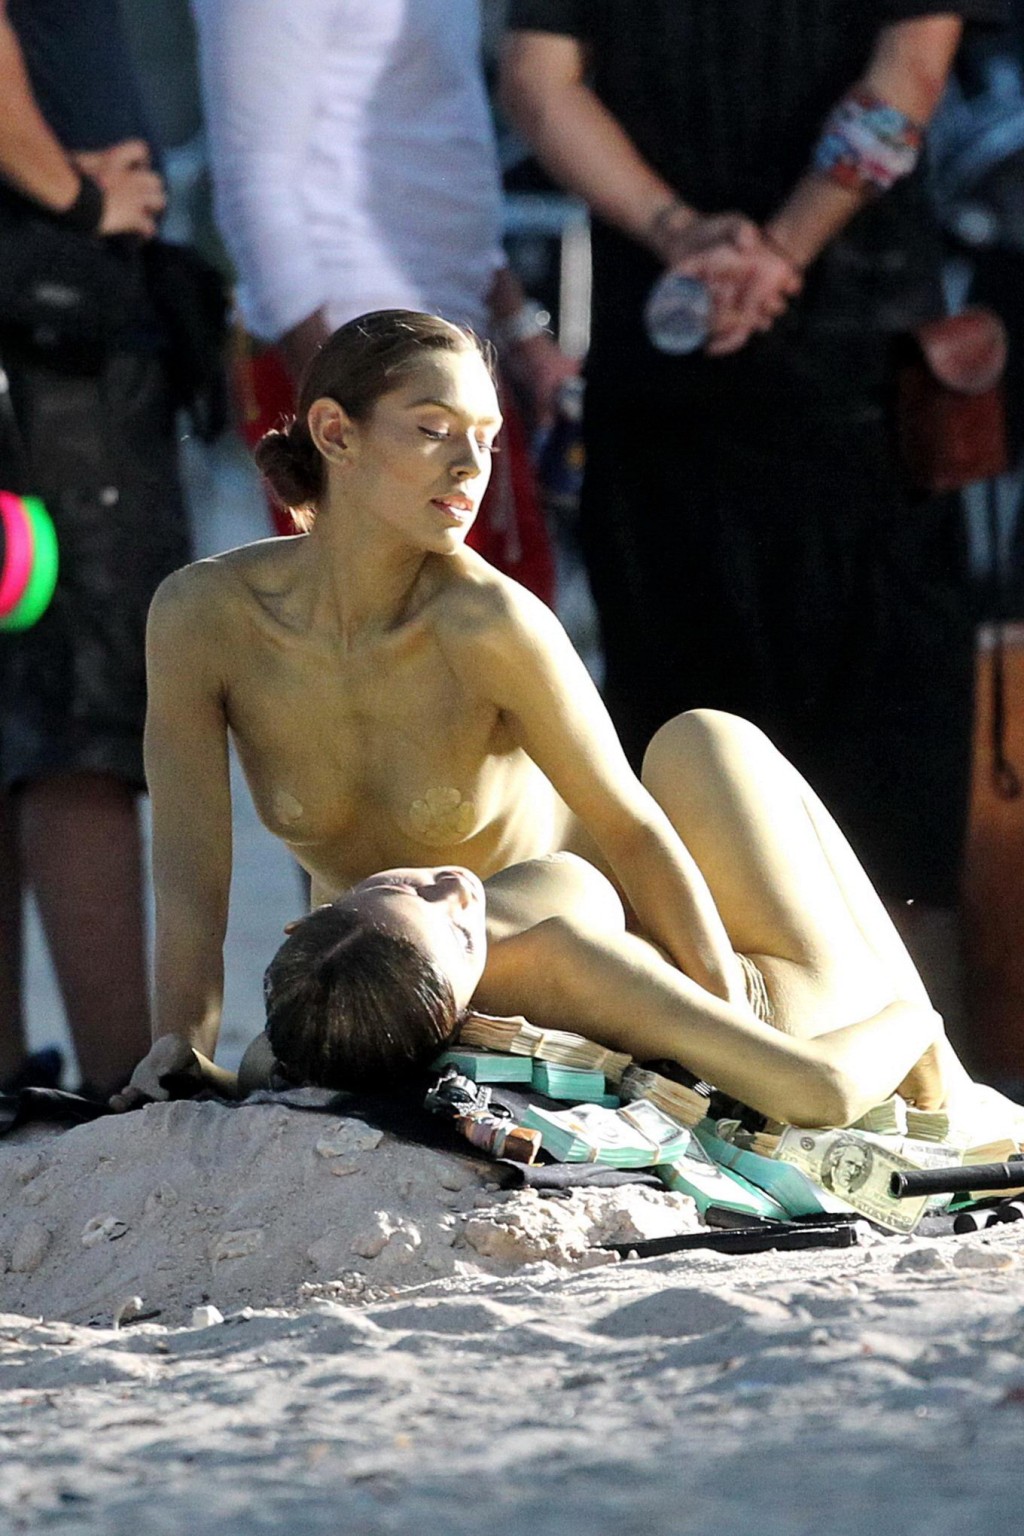 Taylor momsen gira un video musicale sulla spiaggia di miami con due modelle in bodypainting
 #75197640